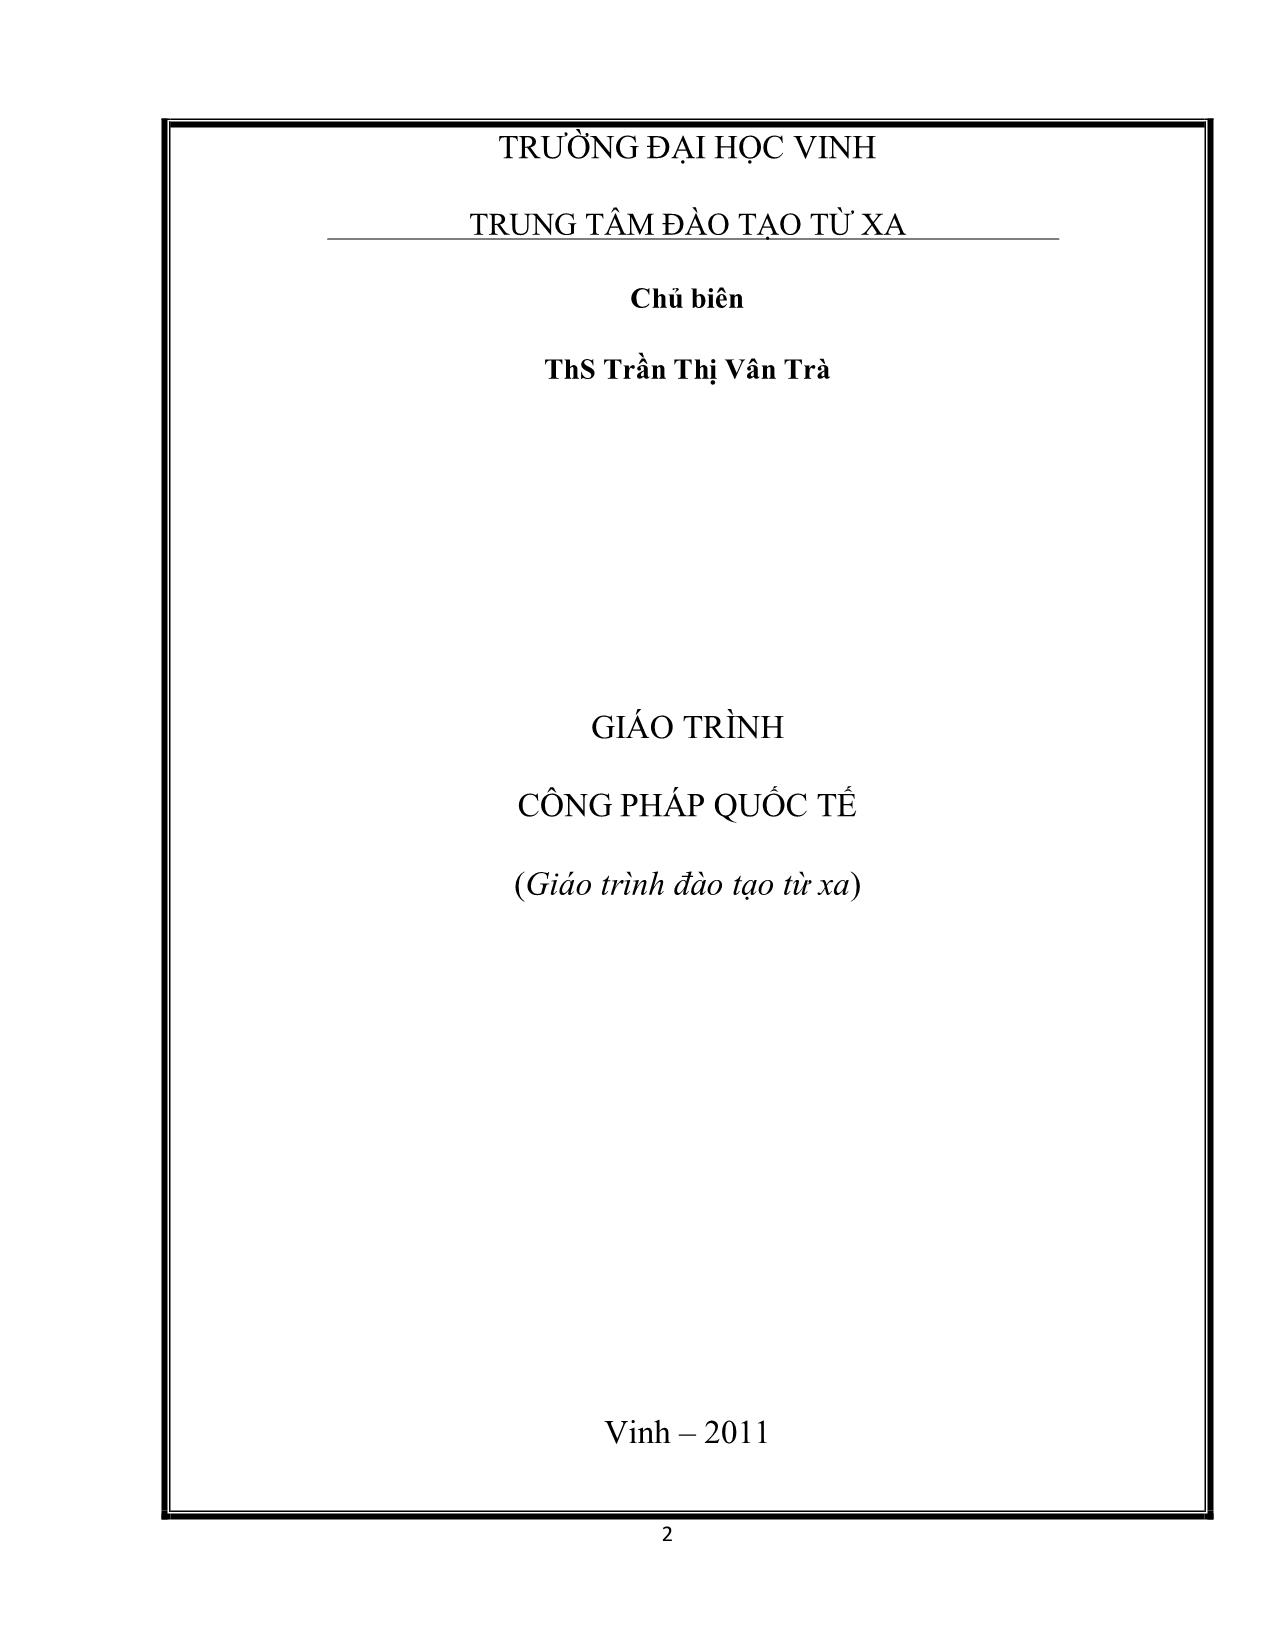 Giáo trình Công pháp quốc tế (Phần 1) trang 2